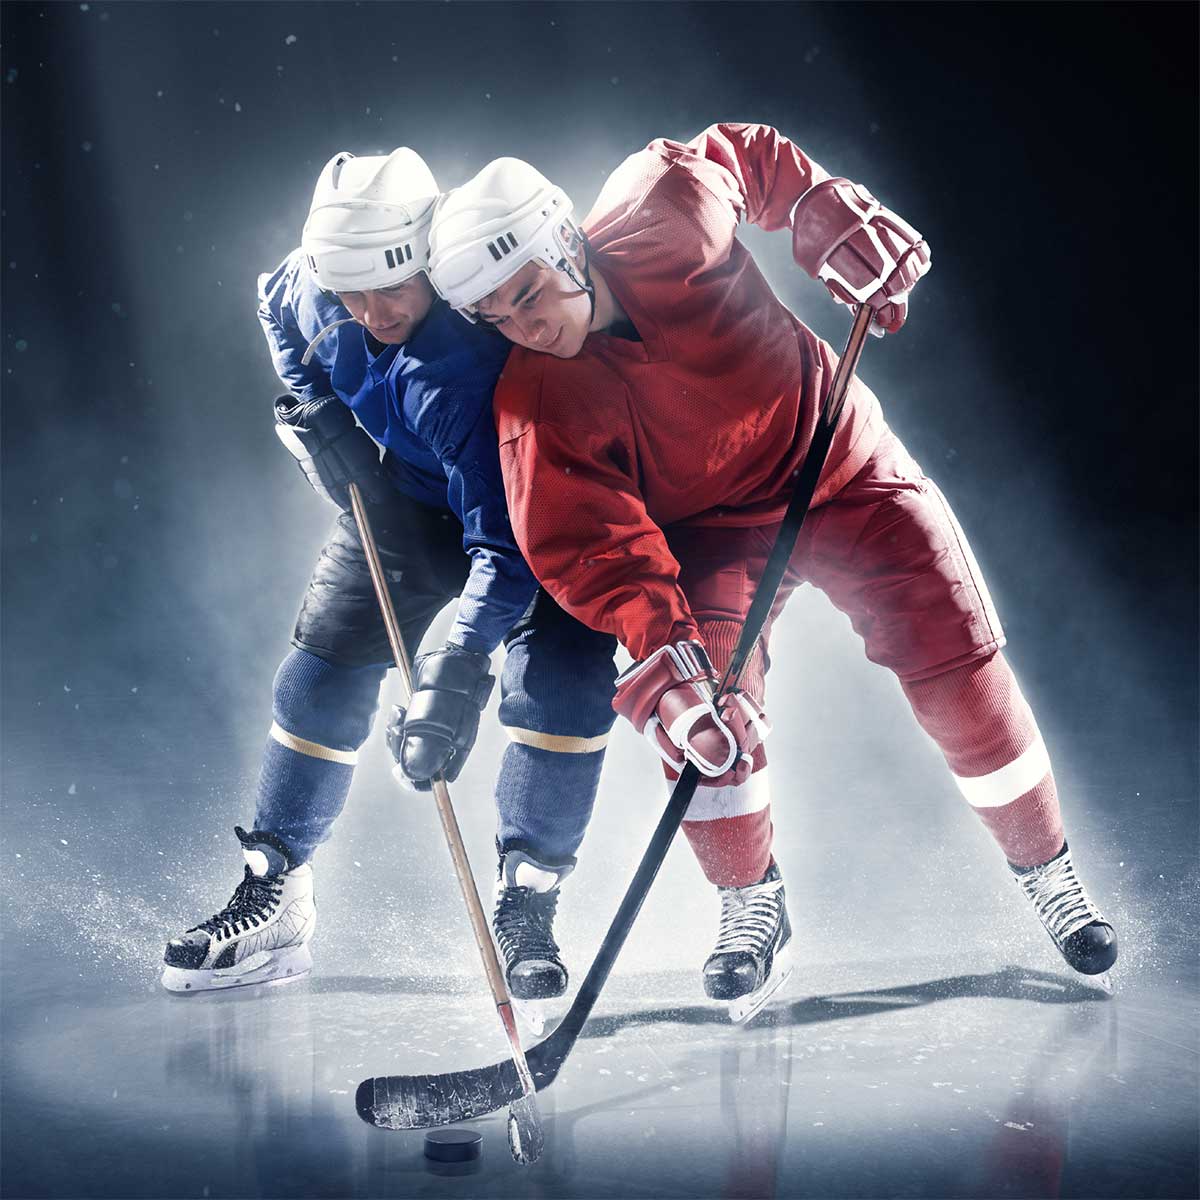 Hockey Jersey Manufacturers in Dzerzhinsk